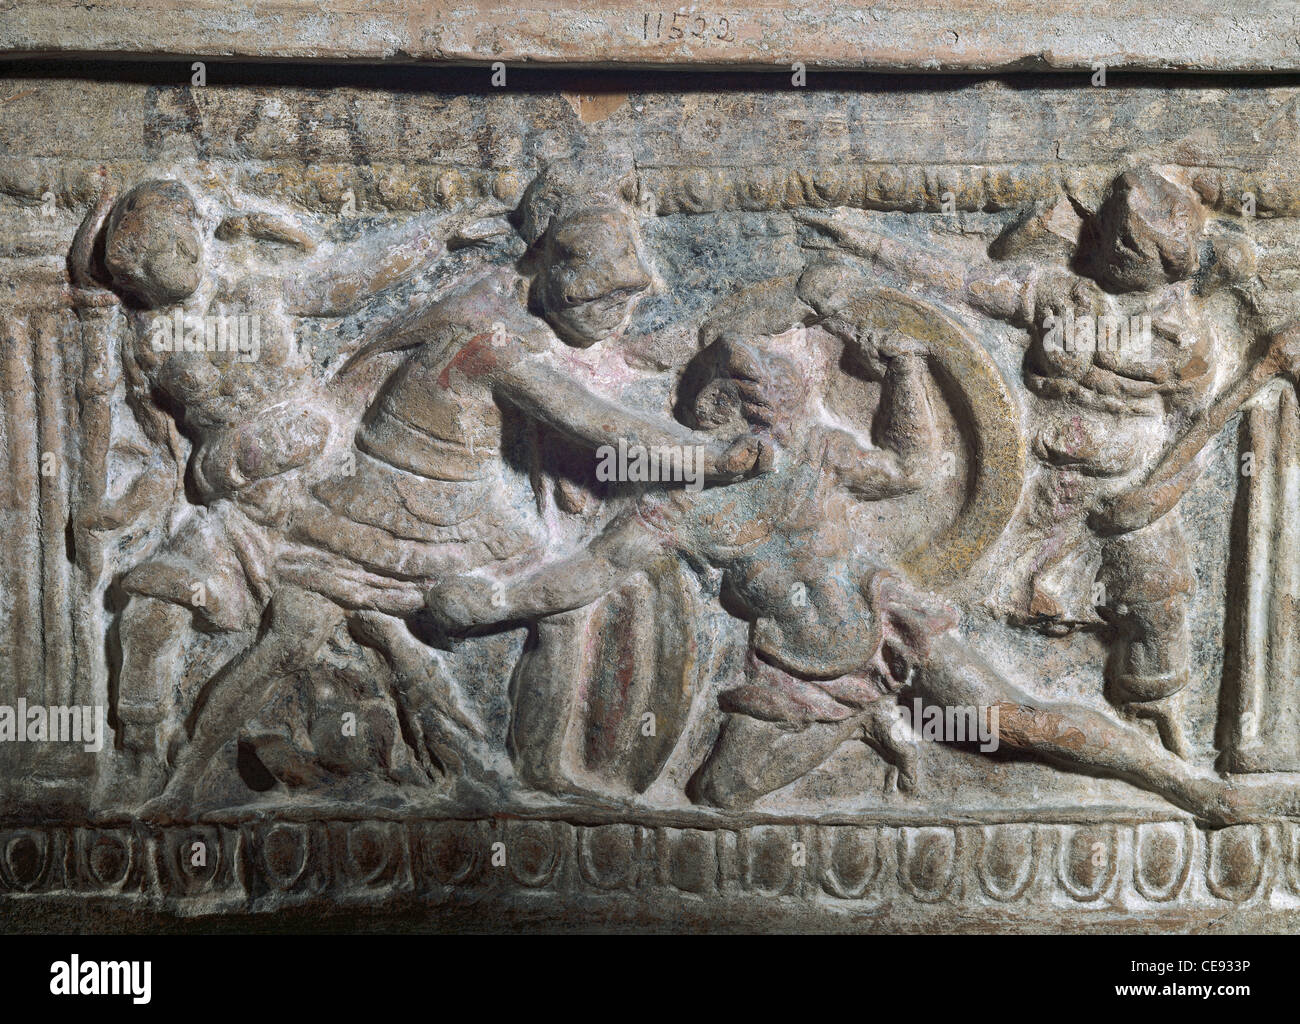 Arte etrusca. Urna raffigurante la lotta tra Eteocle e Polinice, figli di Edipo, per il trono di Tebe. Foto Stock